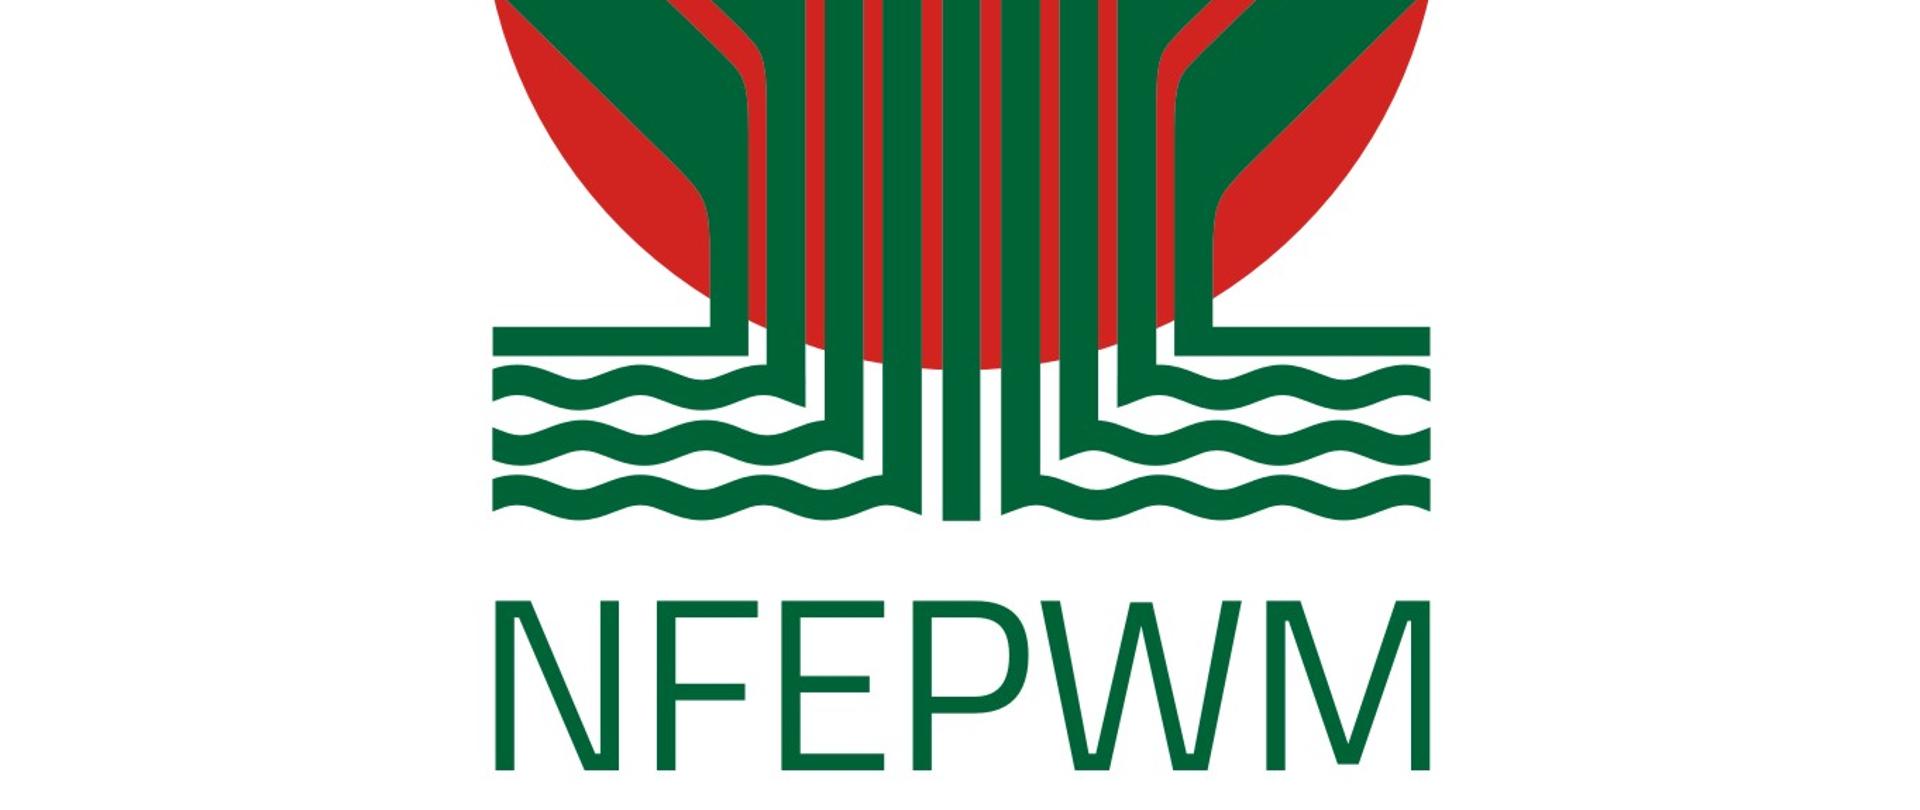 Logotyp NFOŚiGW - pion - skrót - wersja anglojęzyczna